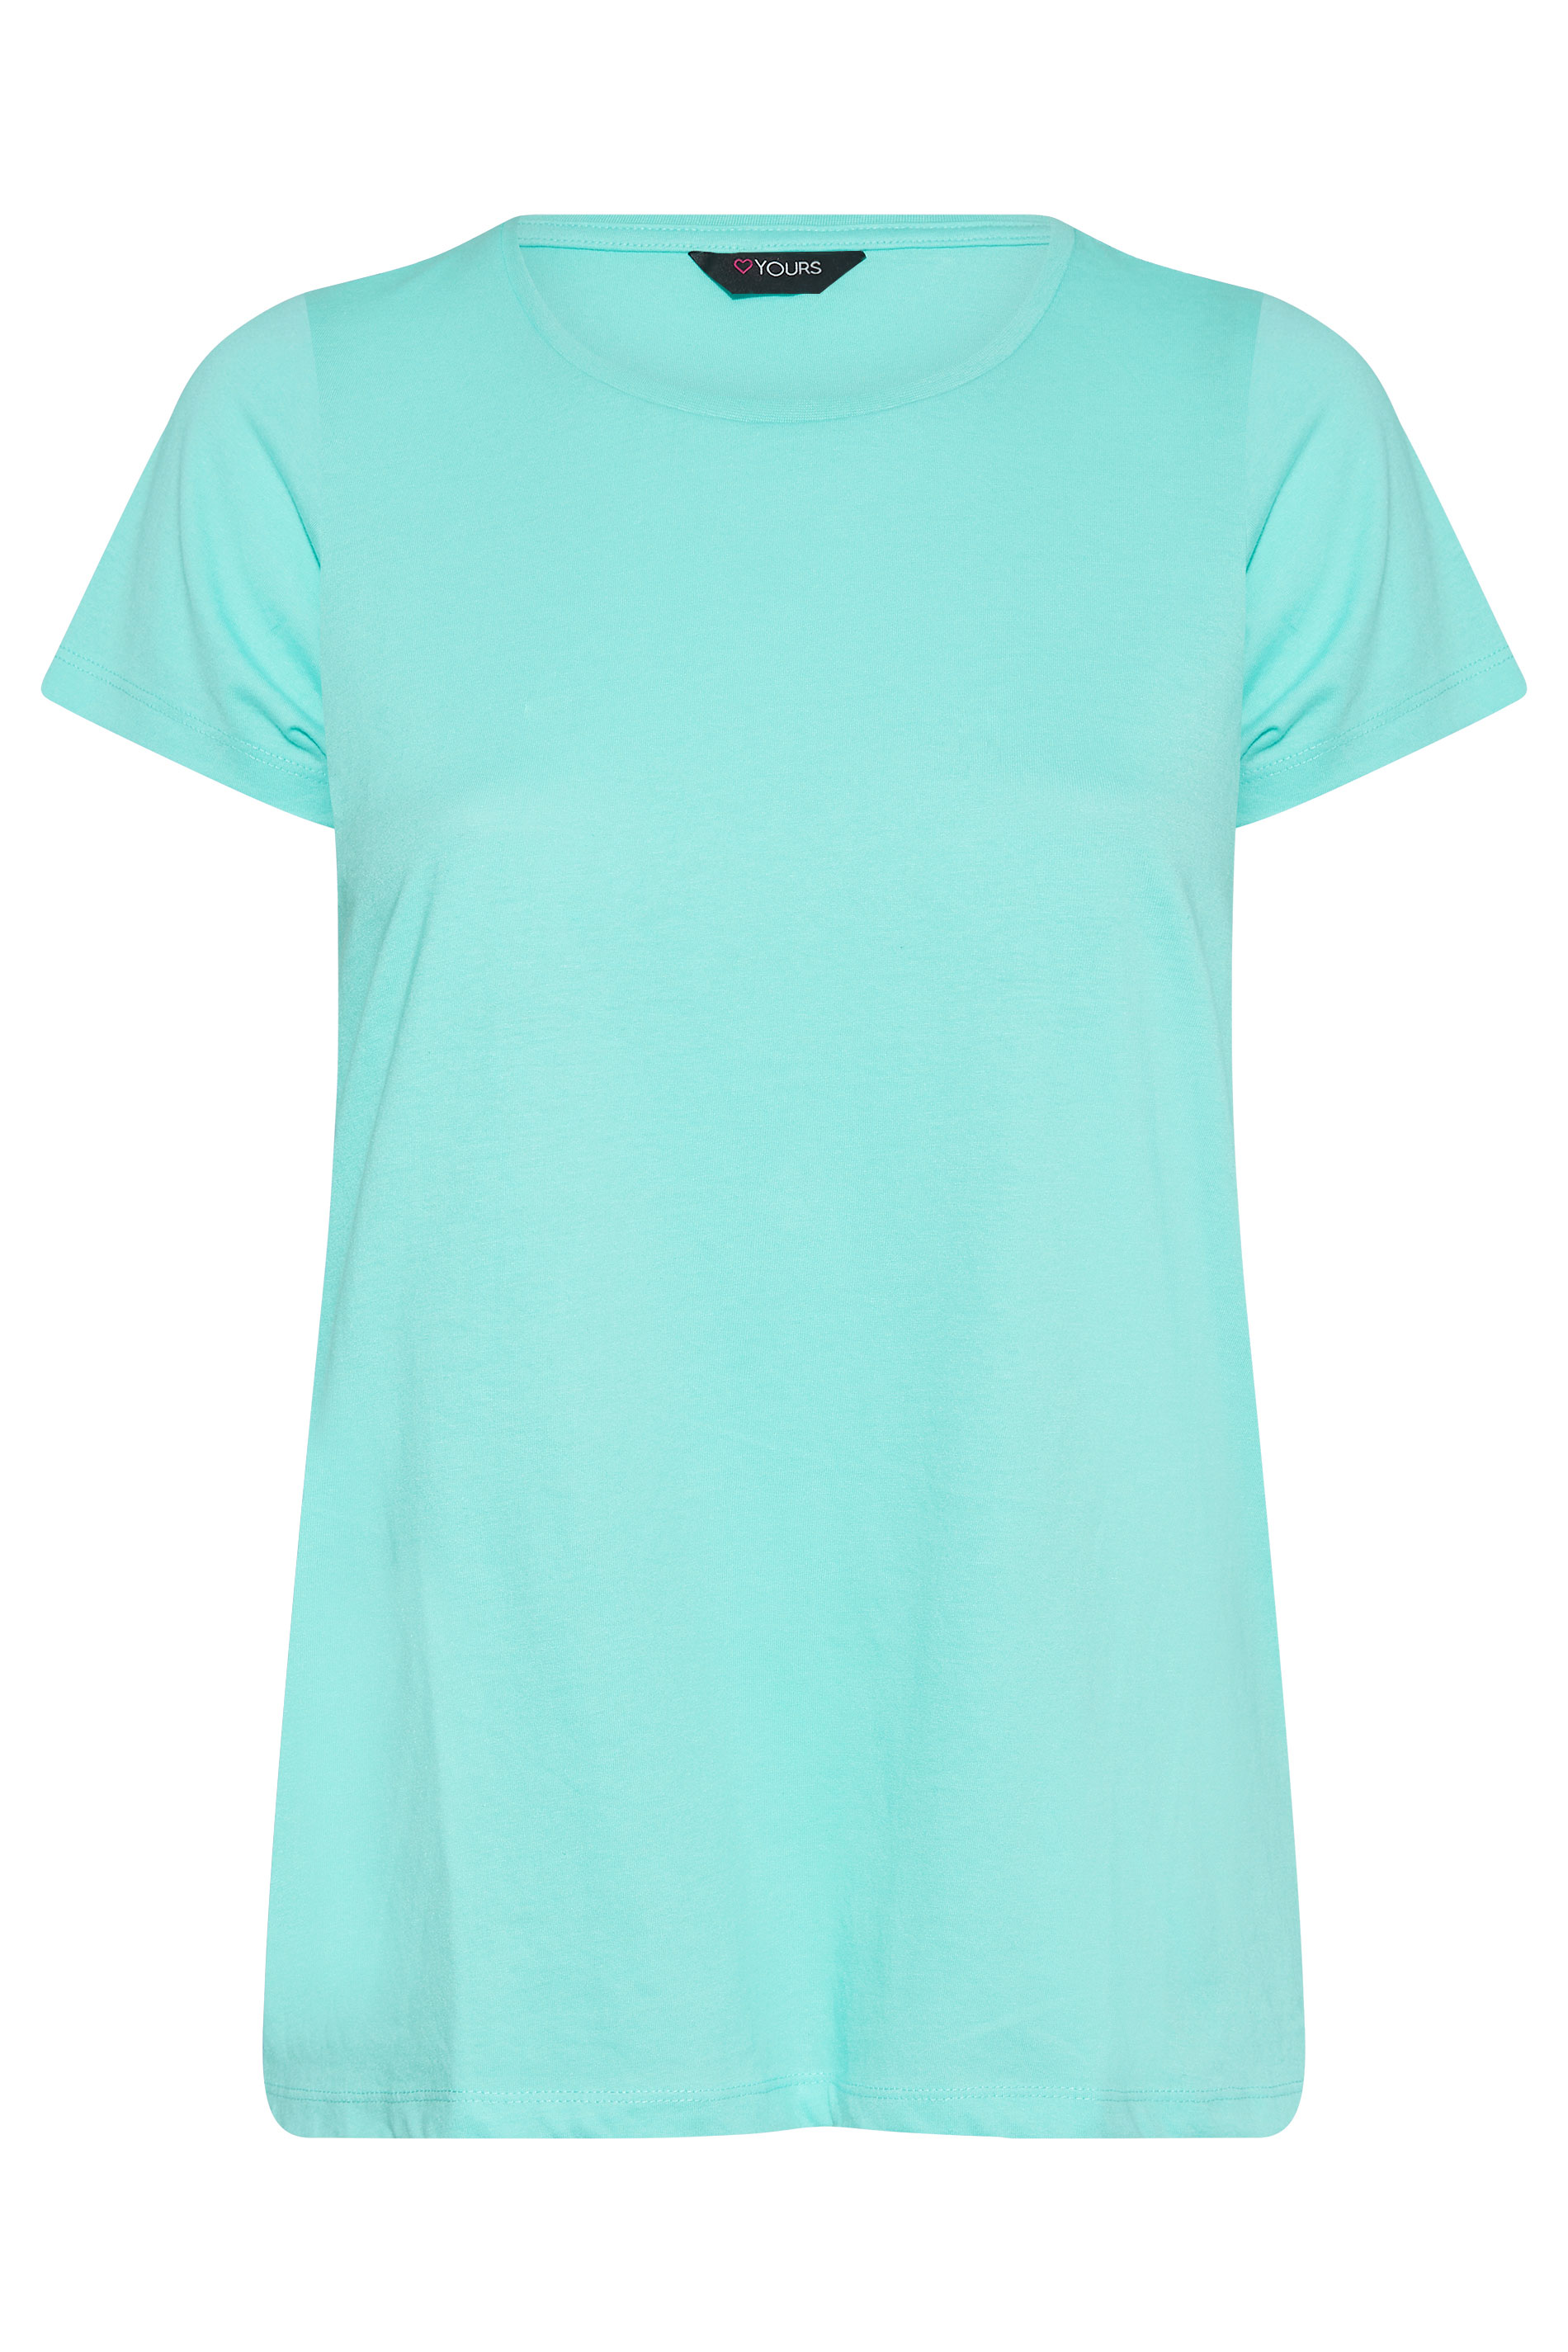 Grande taille  Tops Grande taille  T-Shirts Basiques & Débardeurs | T-Shirt Bleu Clair en Jersey - HZ05473